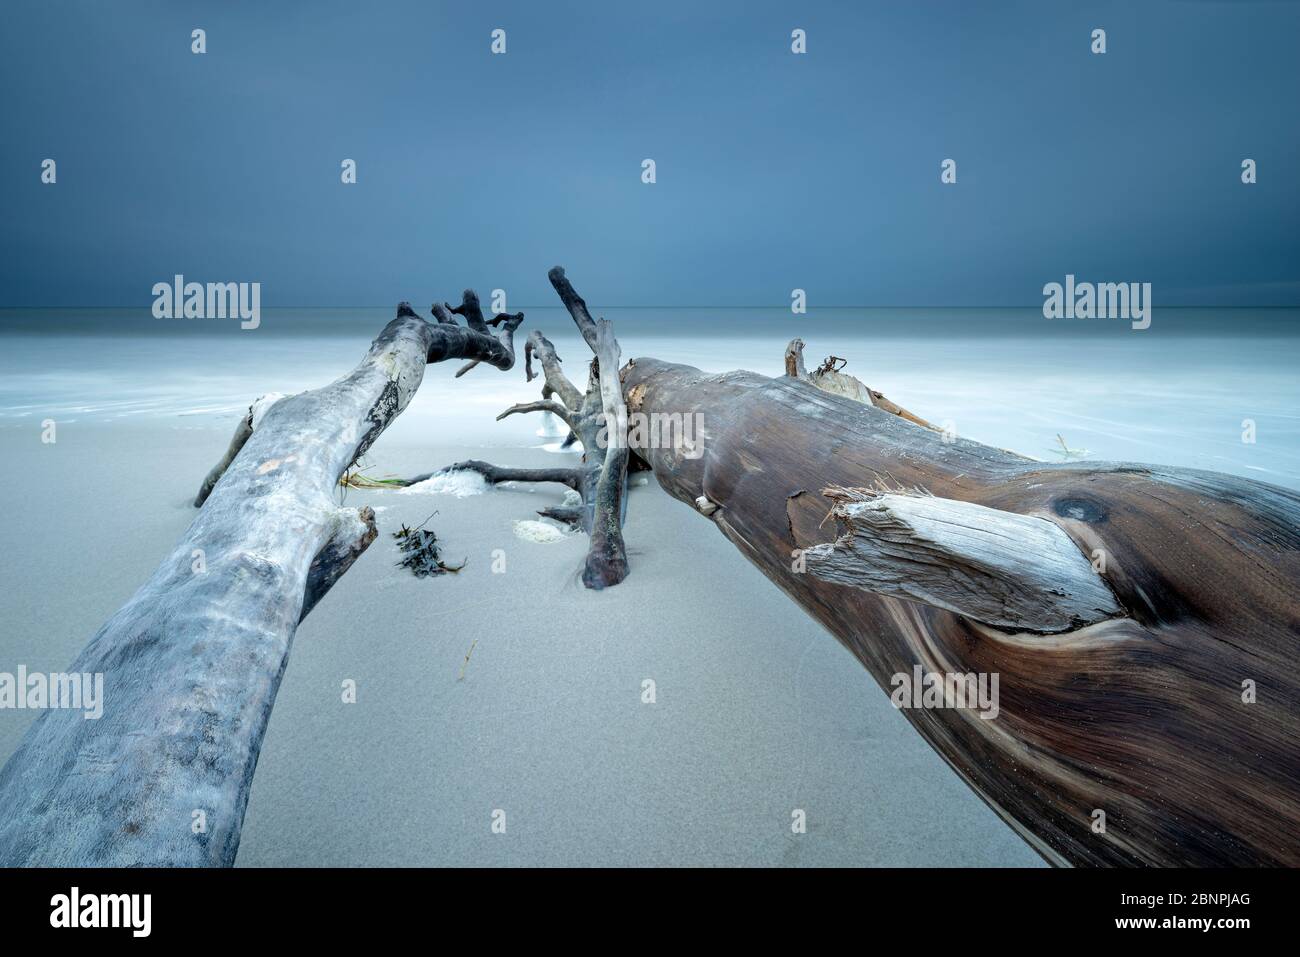 Alberi sradicati sulla spiaggia del Mar Baltico, nuvole scure, lunga esposizione, penisola di Fischland-Darß-Zingst, Parco Nazionale di Vorpommersche Boddenlandschaft, Meclemburgo-Pomerania occidentale, Germania Foto Stock